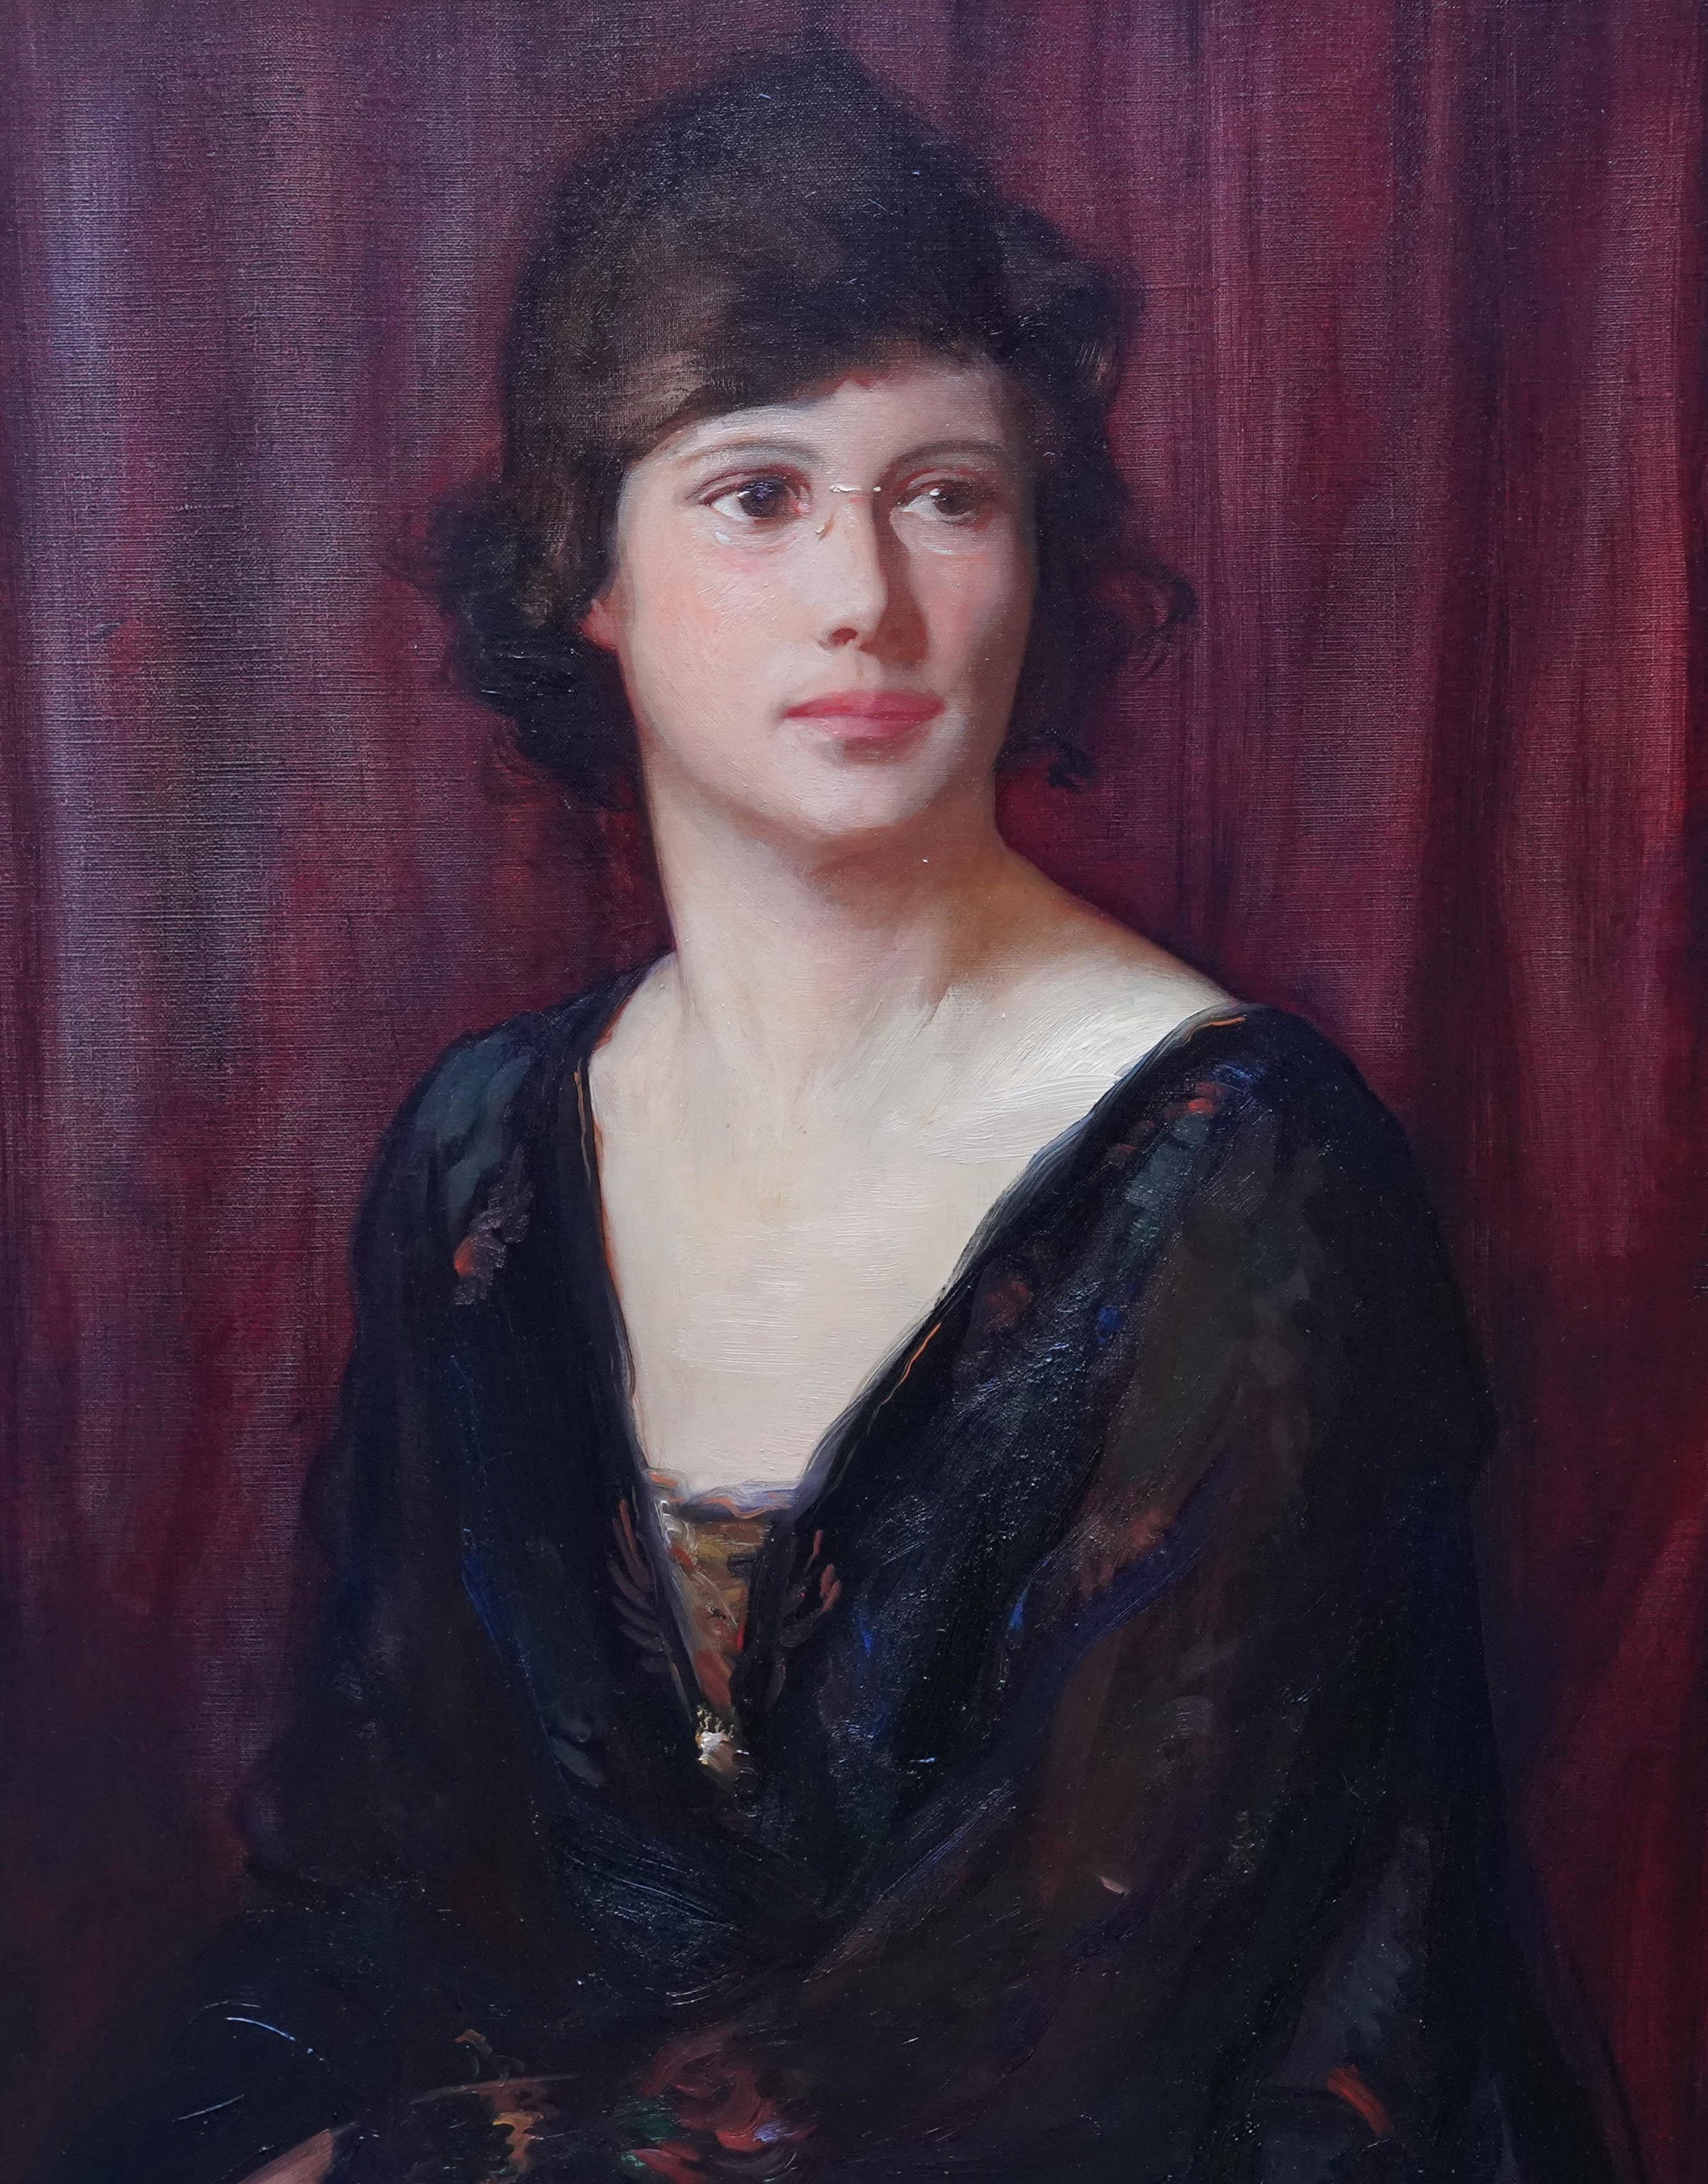 Portrait d'une femme à Pince Nez - Portrait à l'huile britannique de 1919 - Réalisme Painting par Alfred Kingsley Lawrence